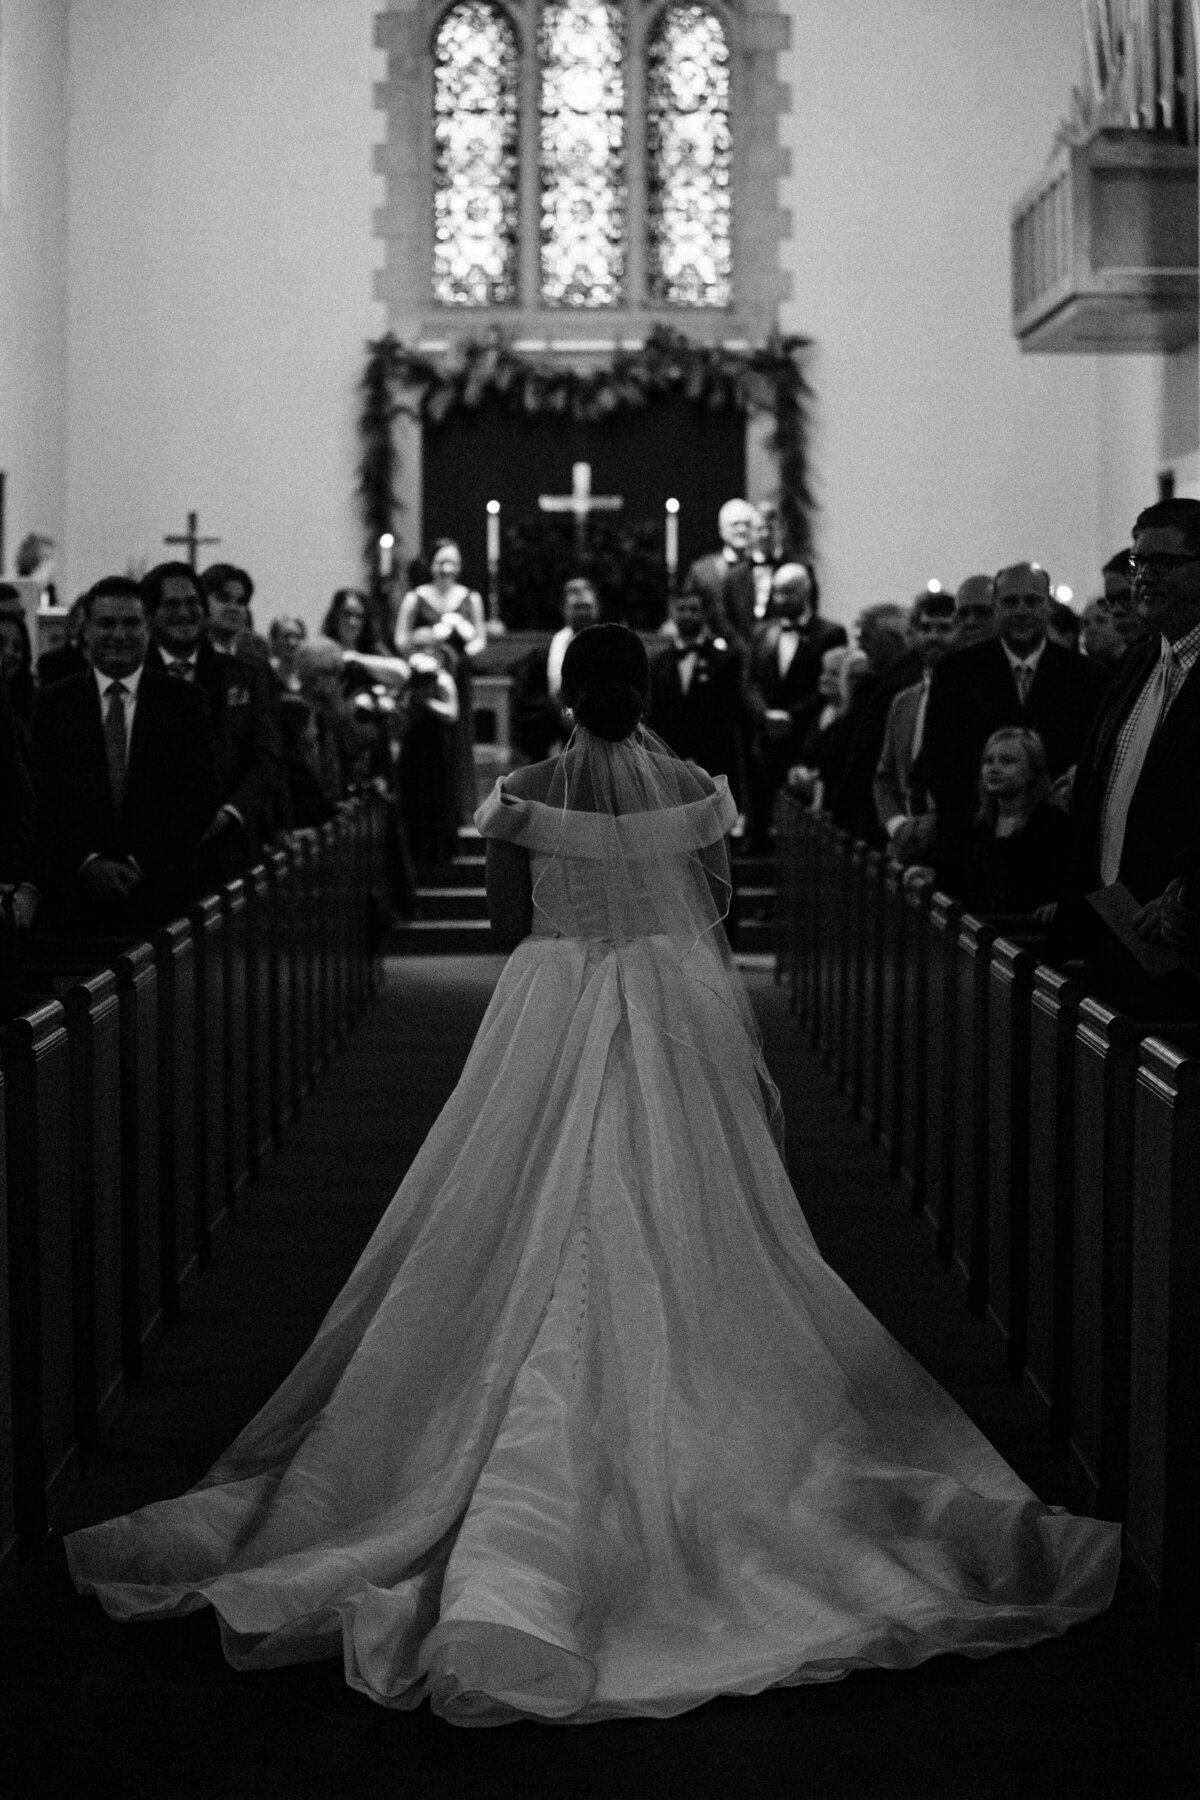 Bride walking down the aisle of church